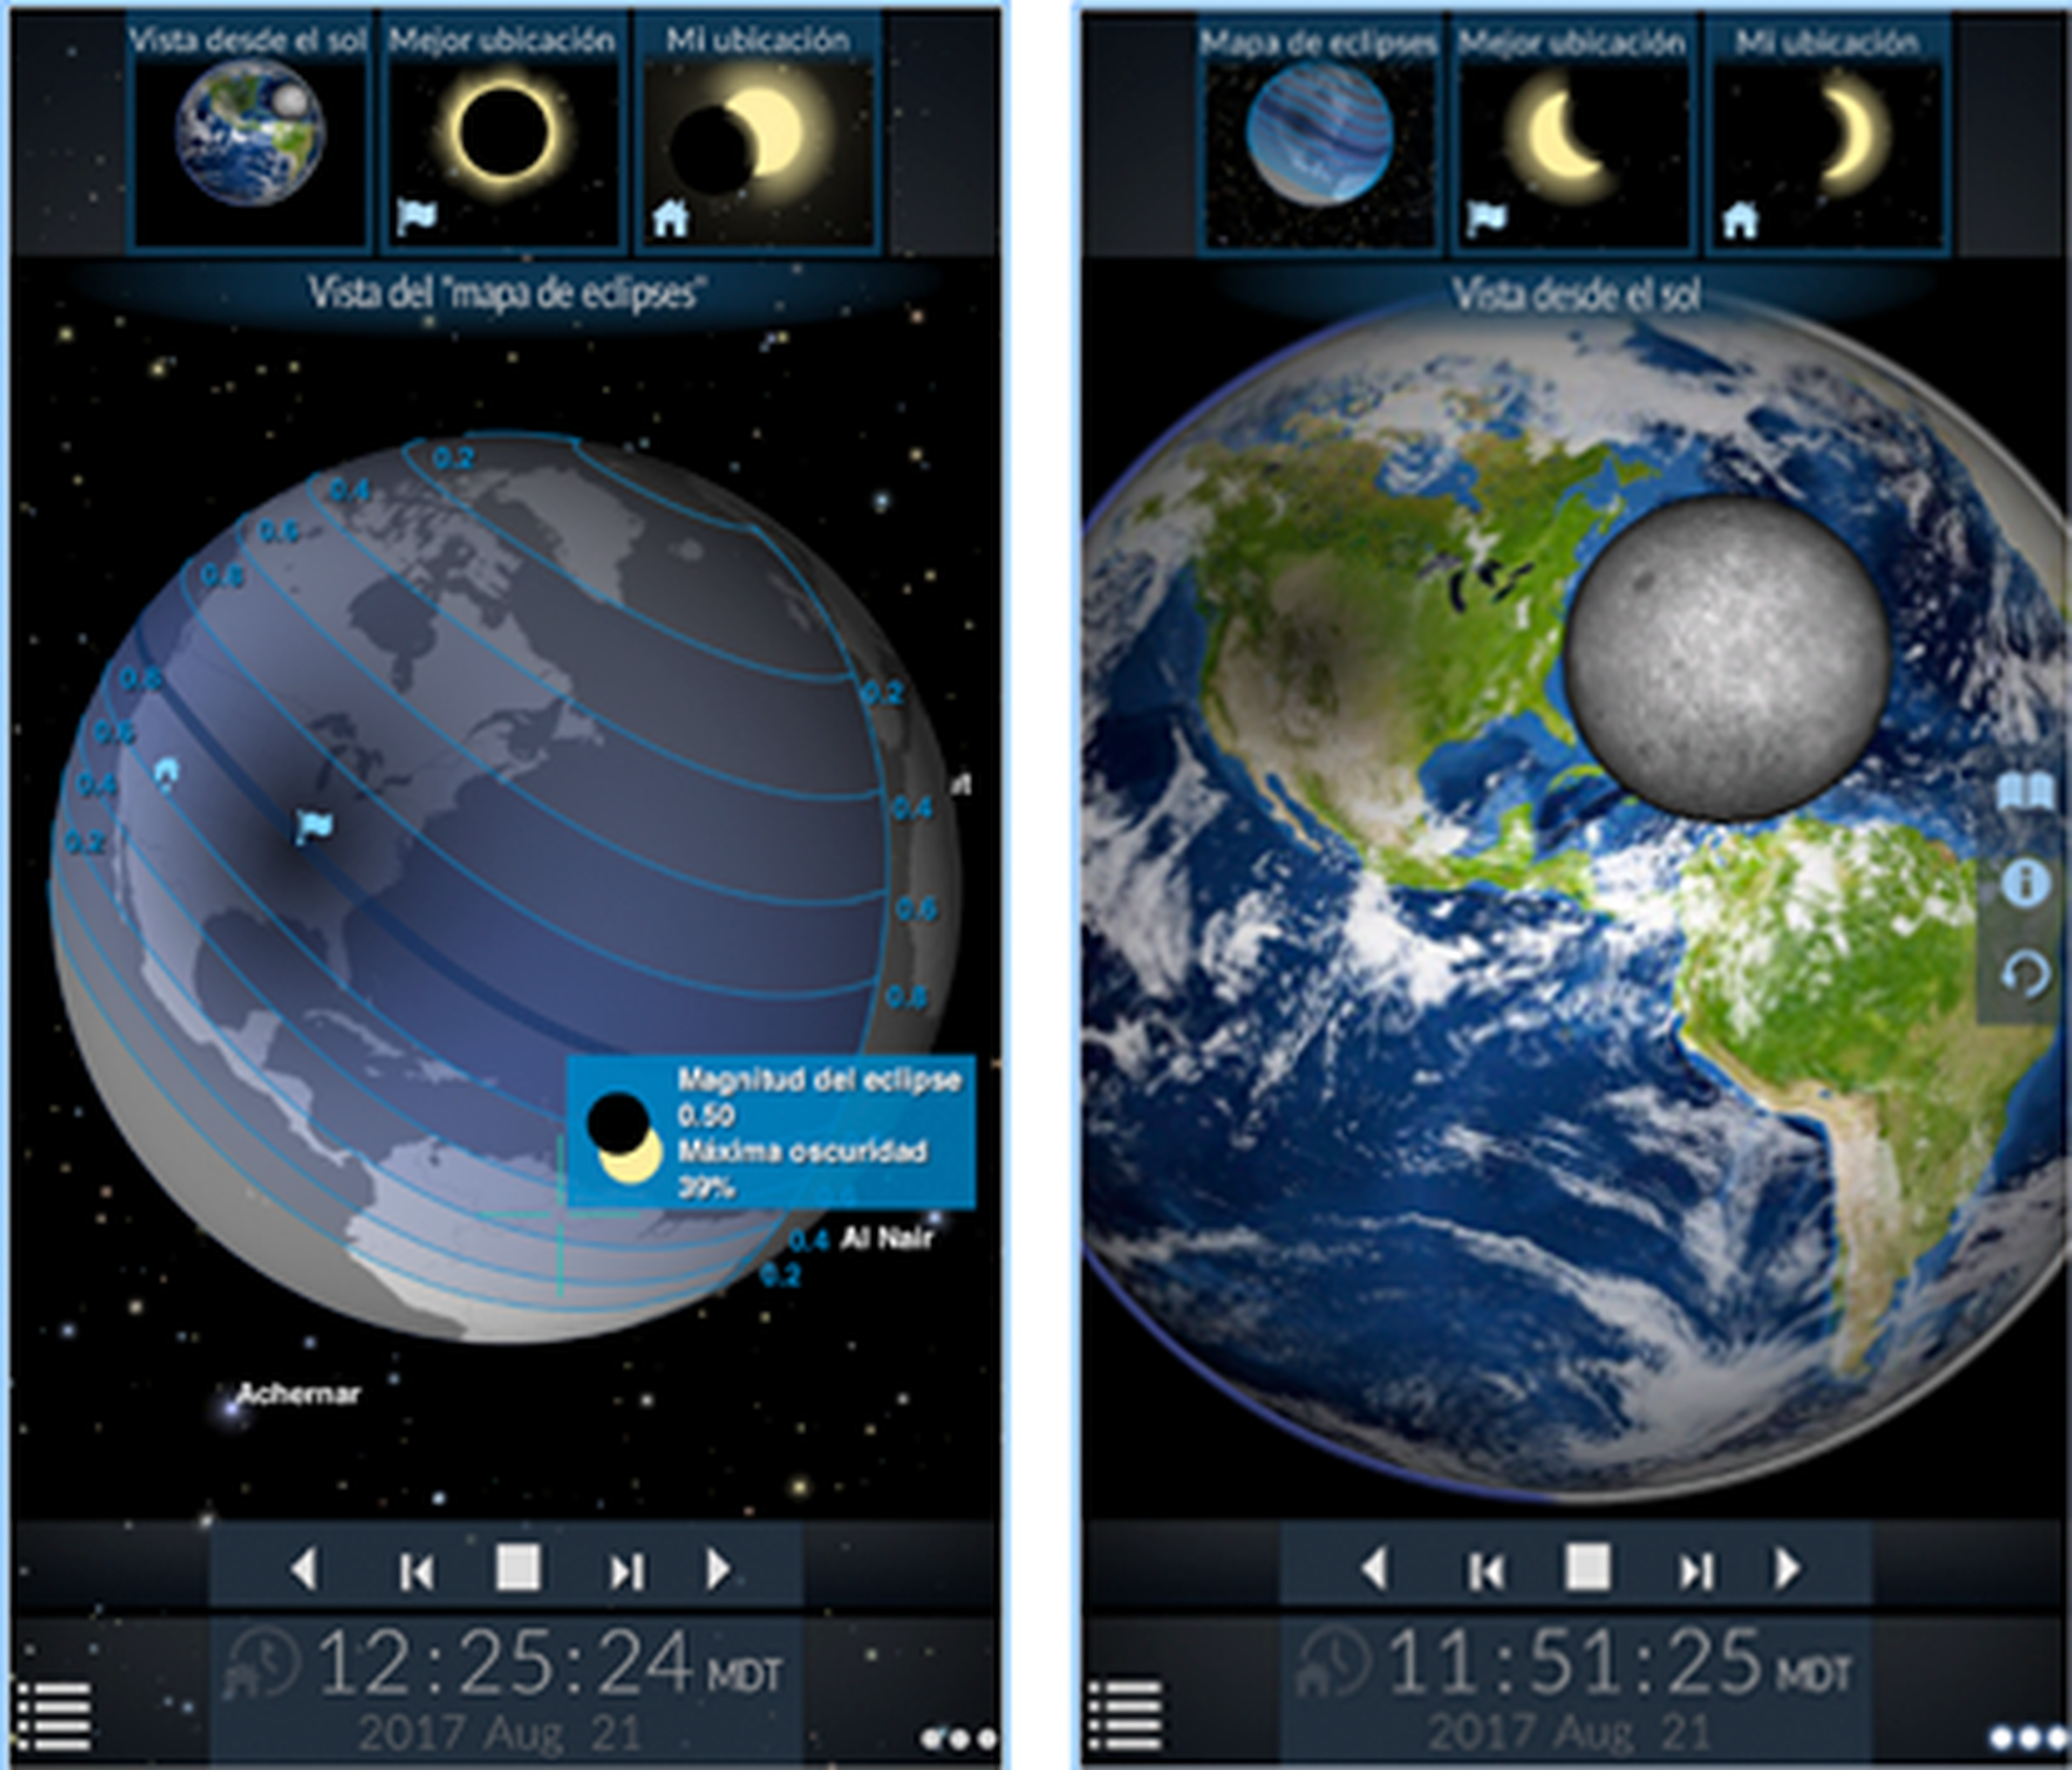 Las mejores apps para ver el eclipse solar de agosto 2017